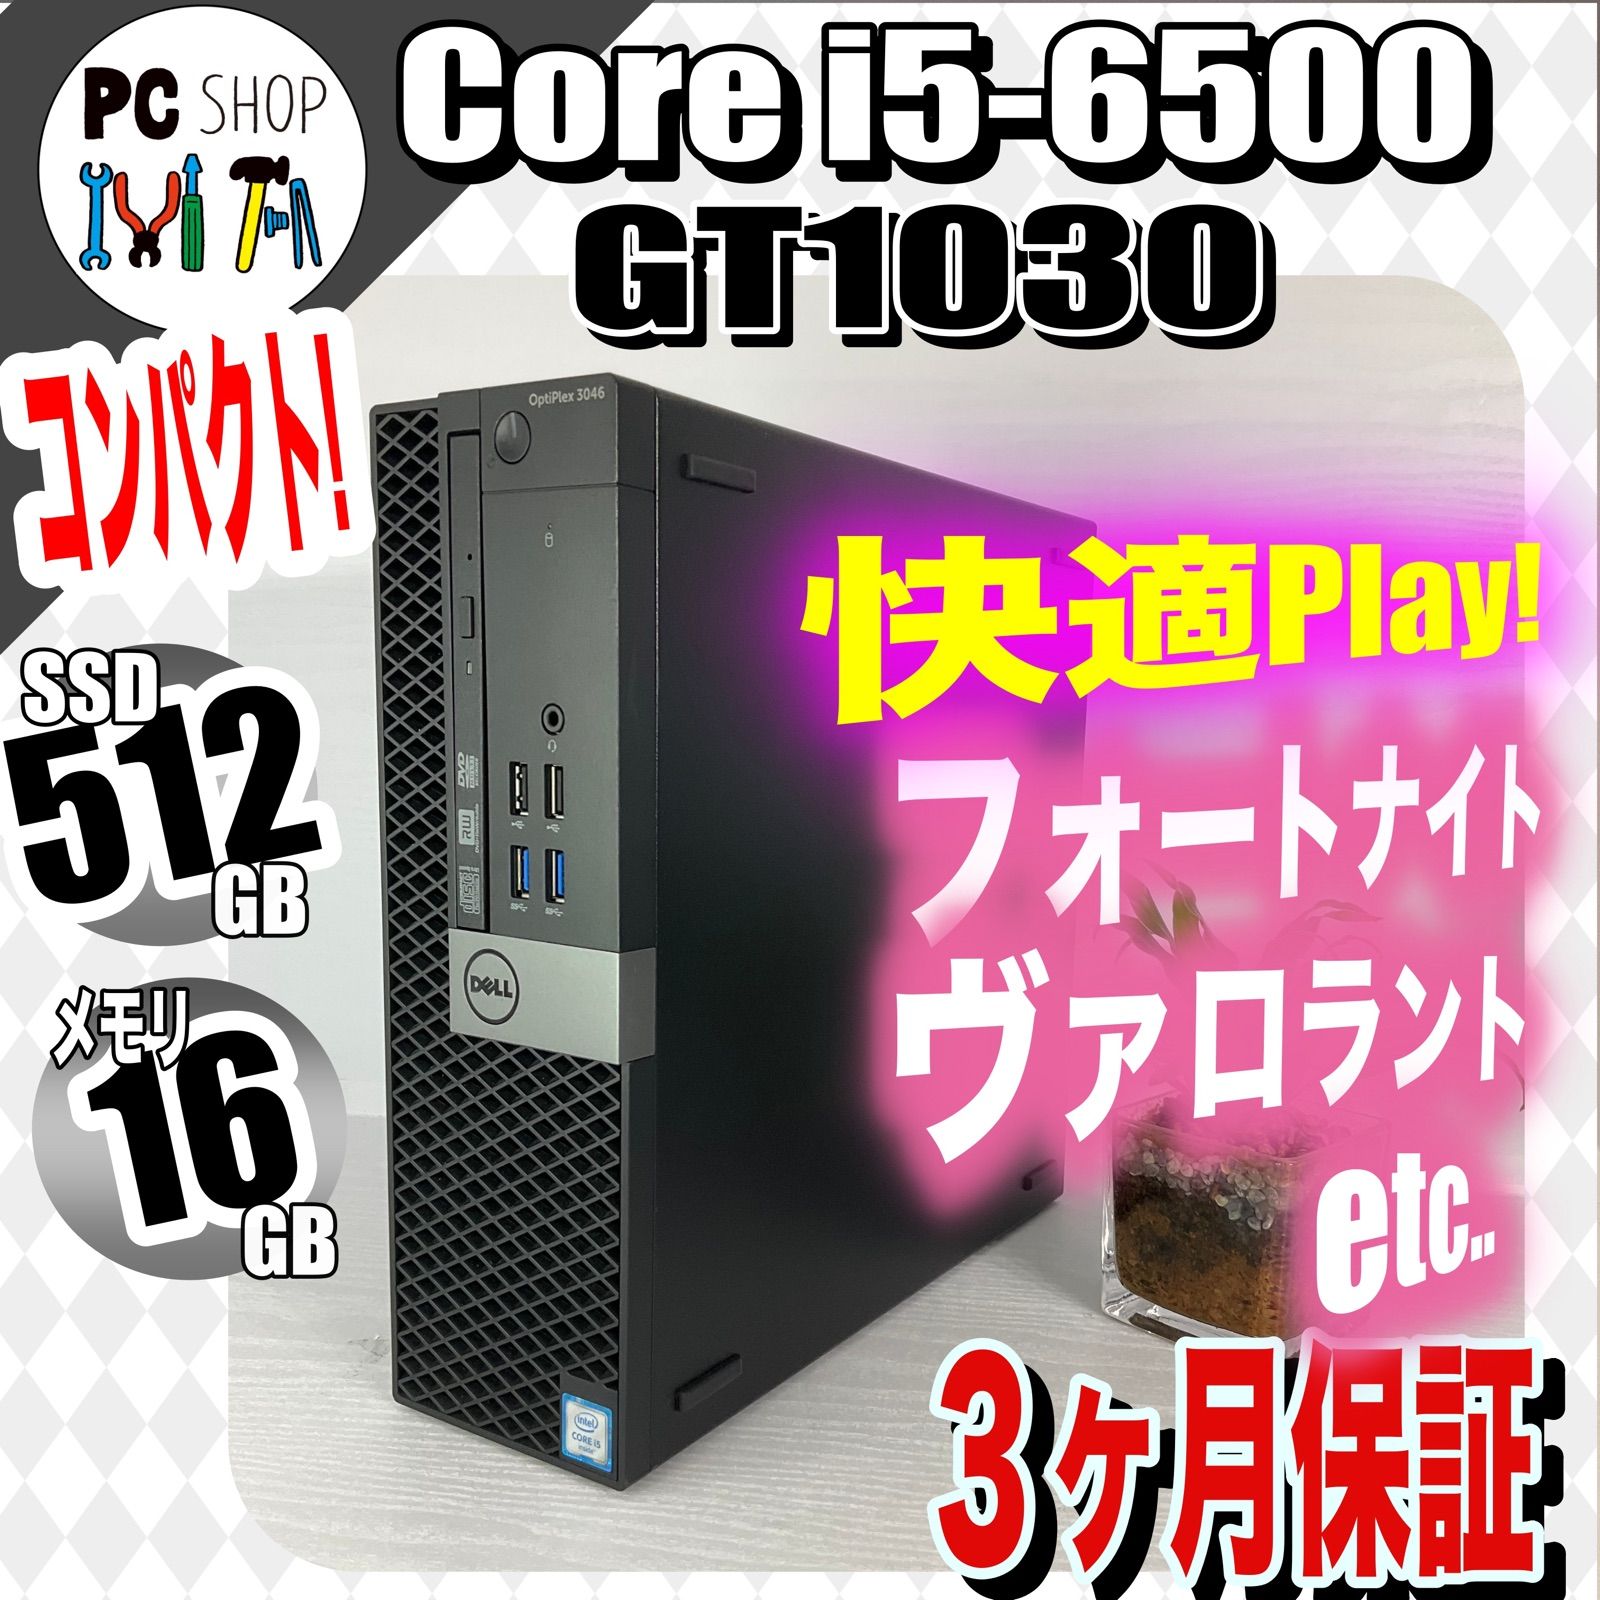 【初心者向け】DELL ライトゲーミングPC  i7 3770 GT1030